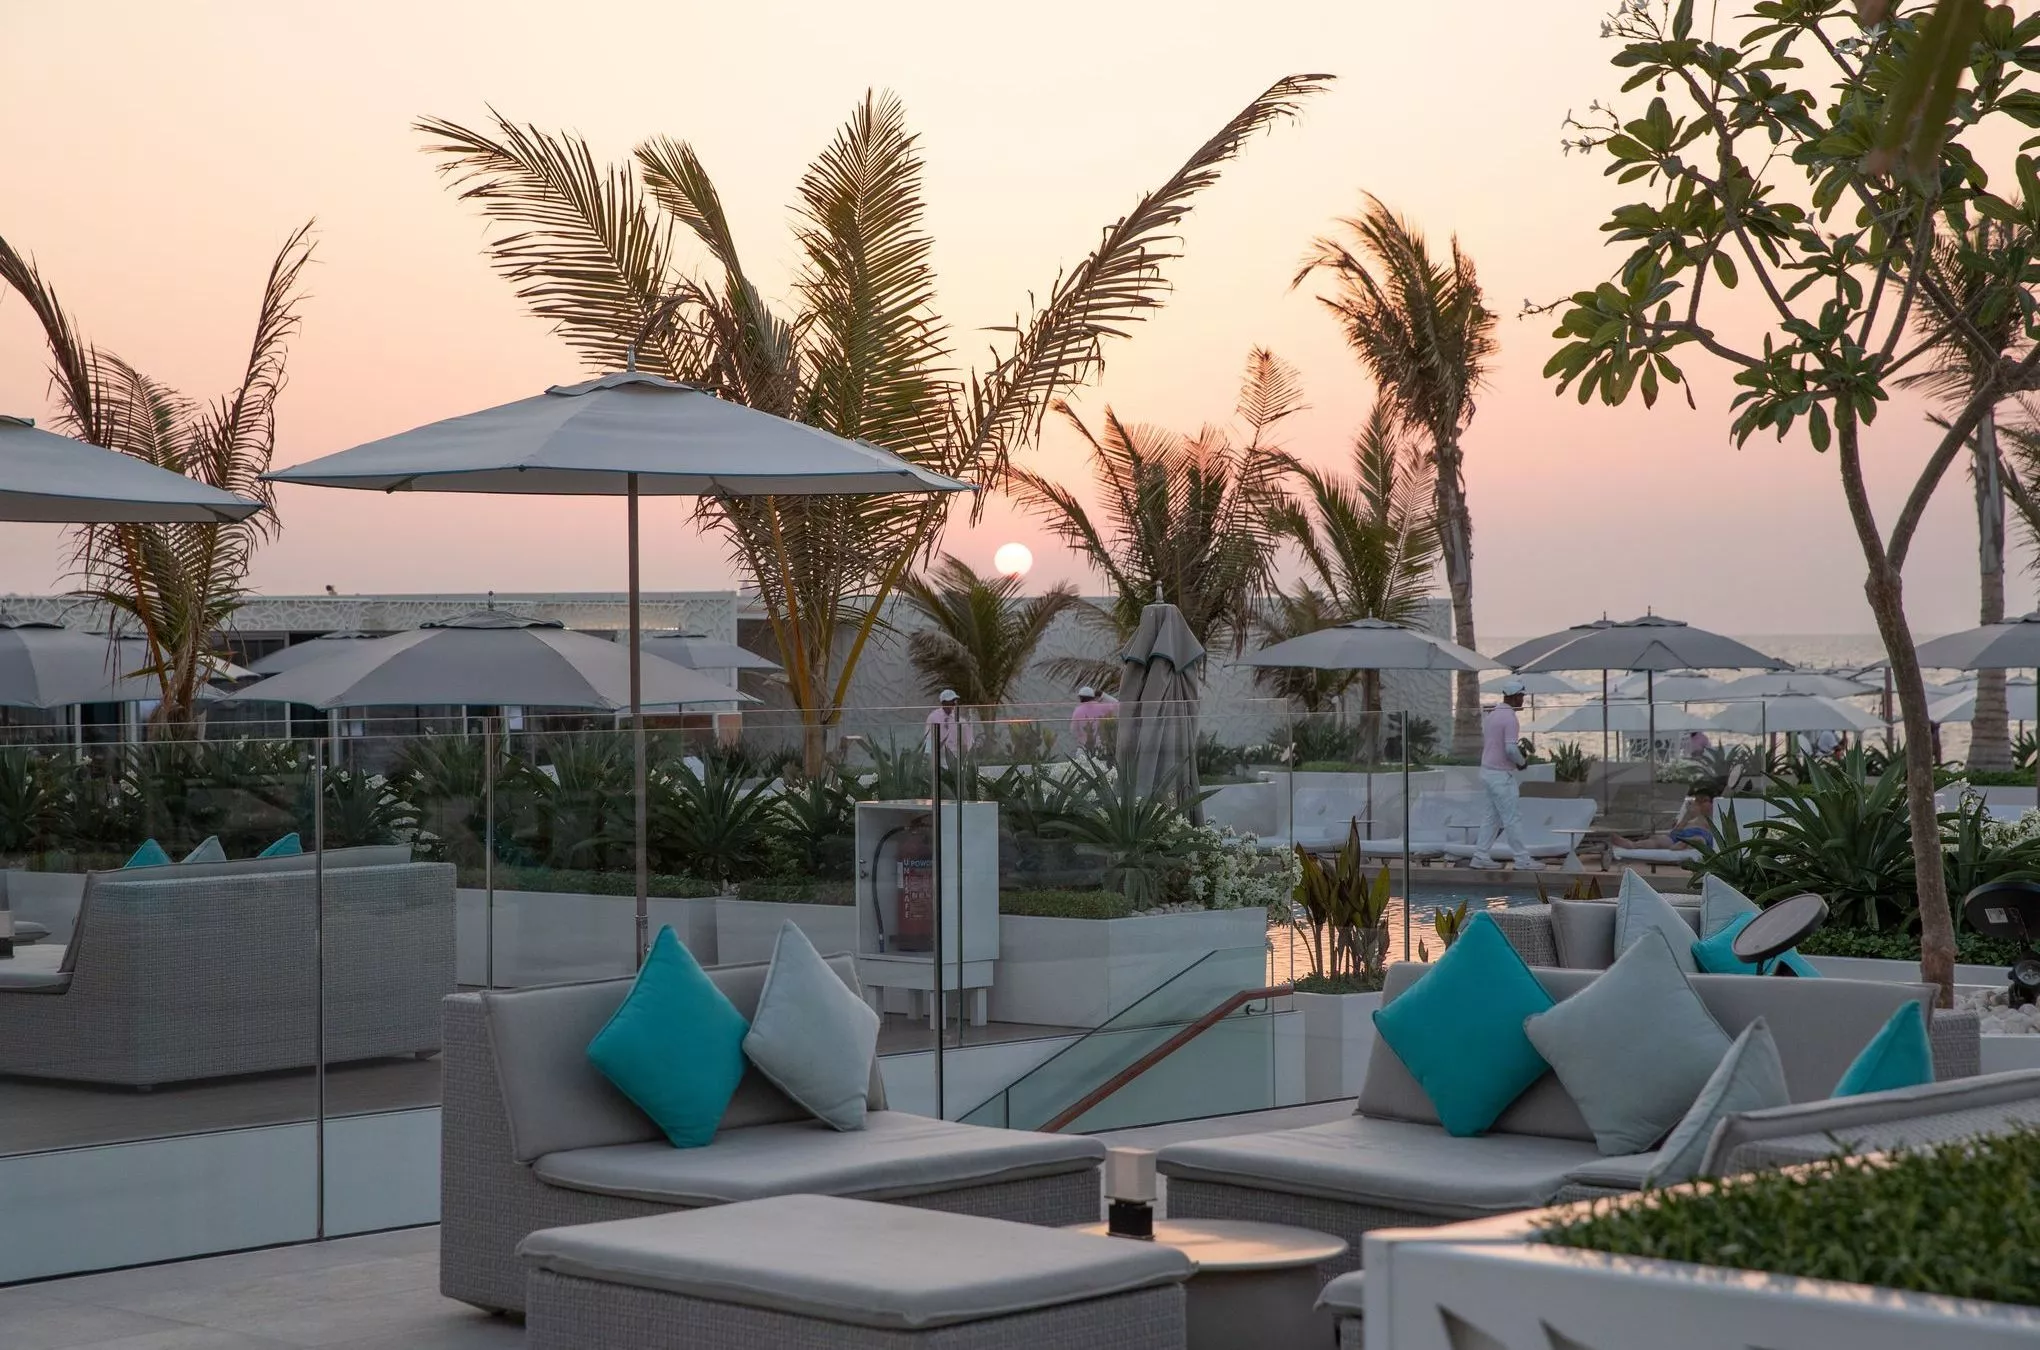 Mediterranes Flair dank Palmen und exzellenter Küche in der Scape Lounge auf dem Dach des Hotels